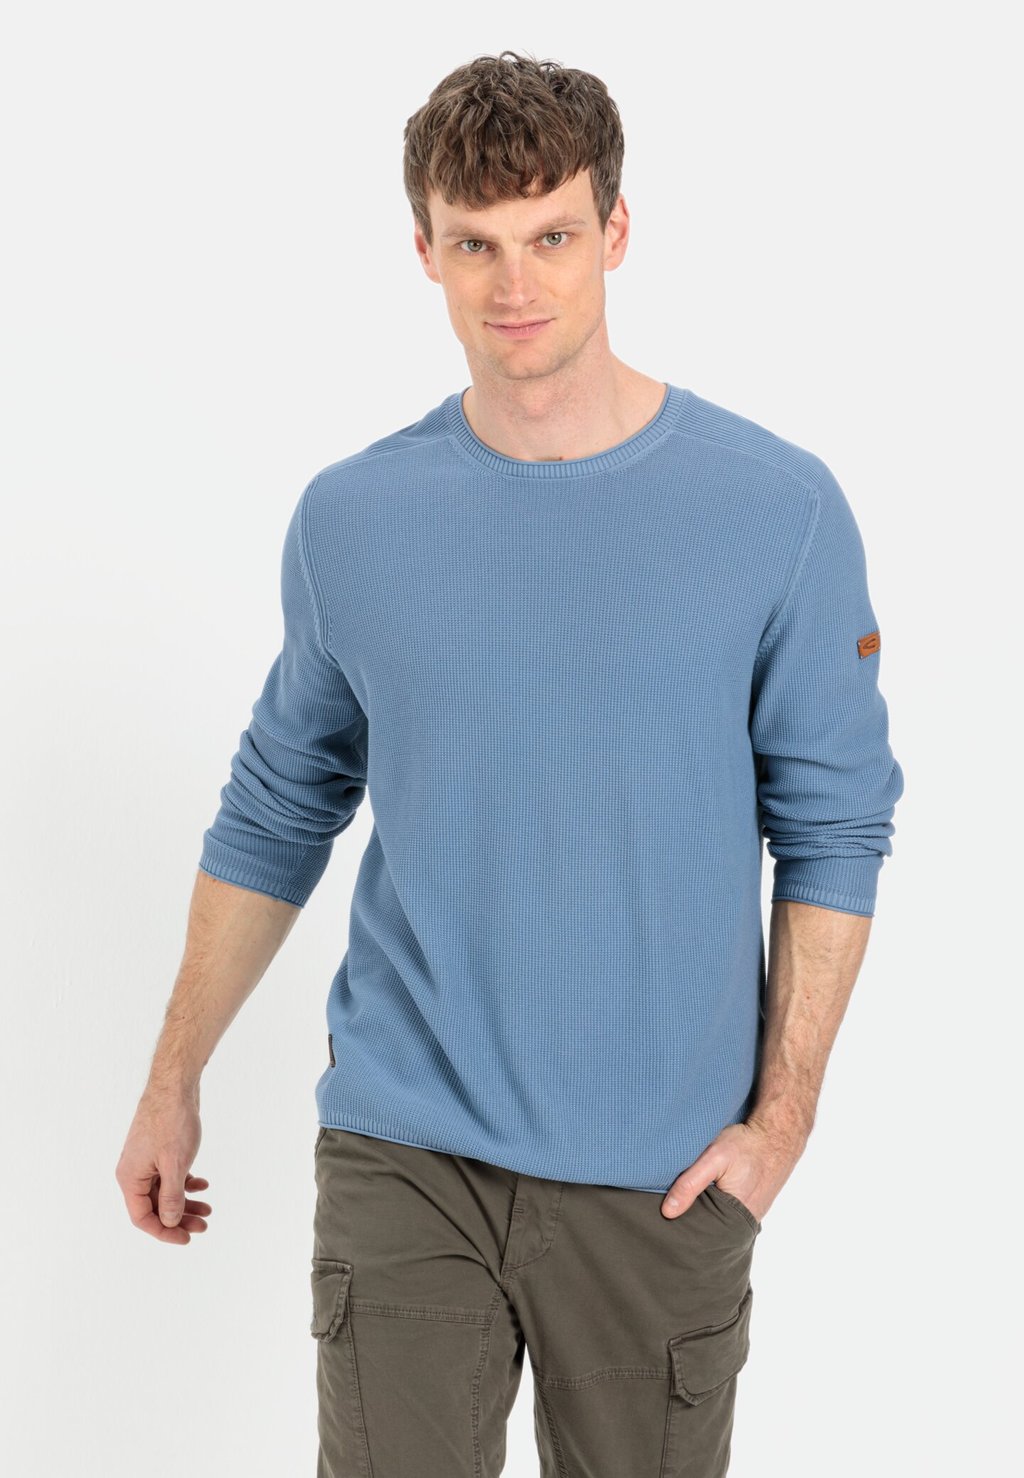 Вязаный свитер AUS ORGANIC camel active, цвет elemental blue